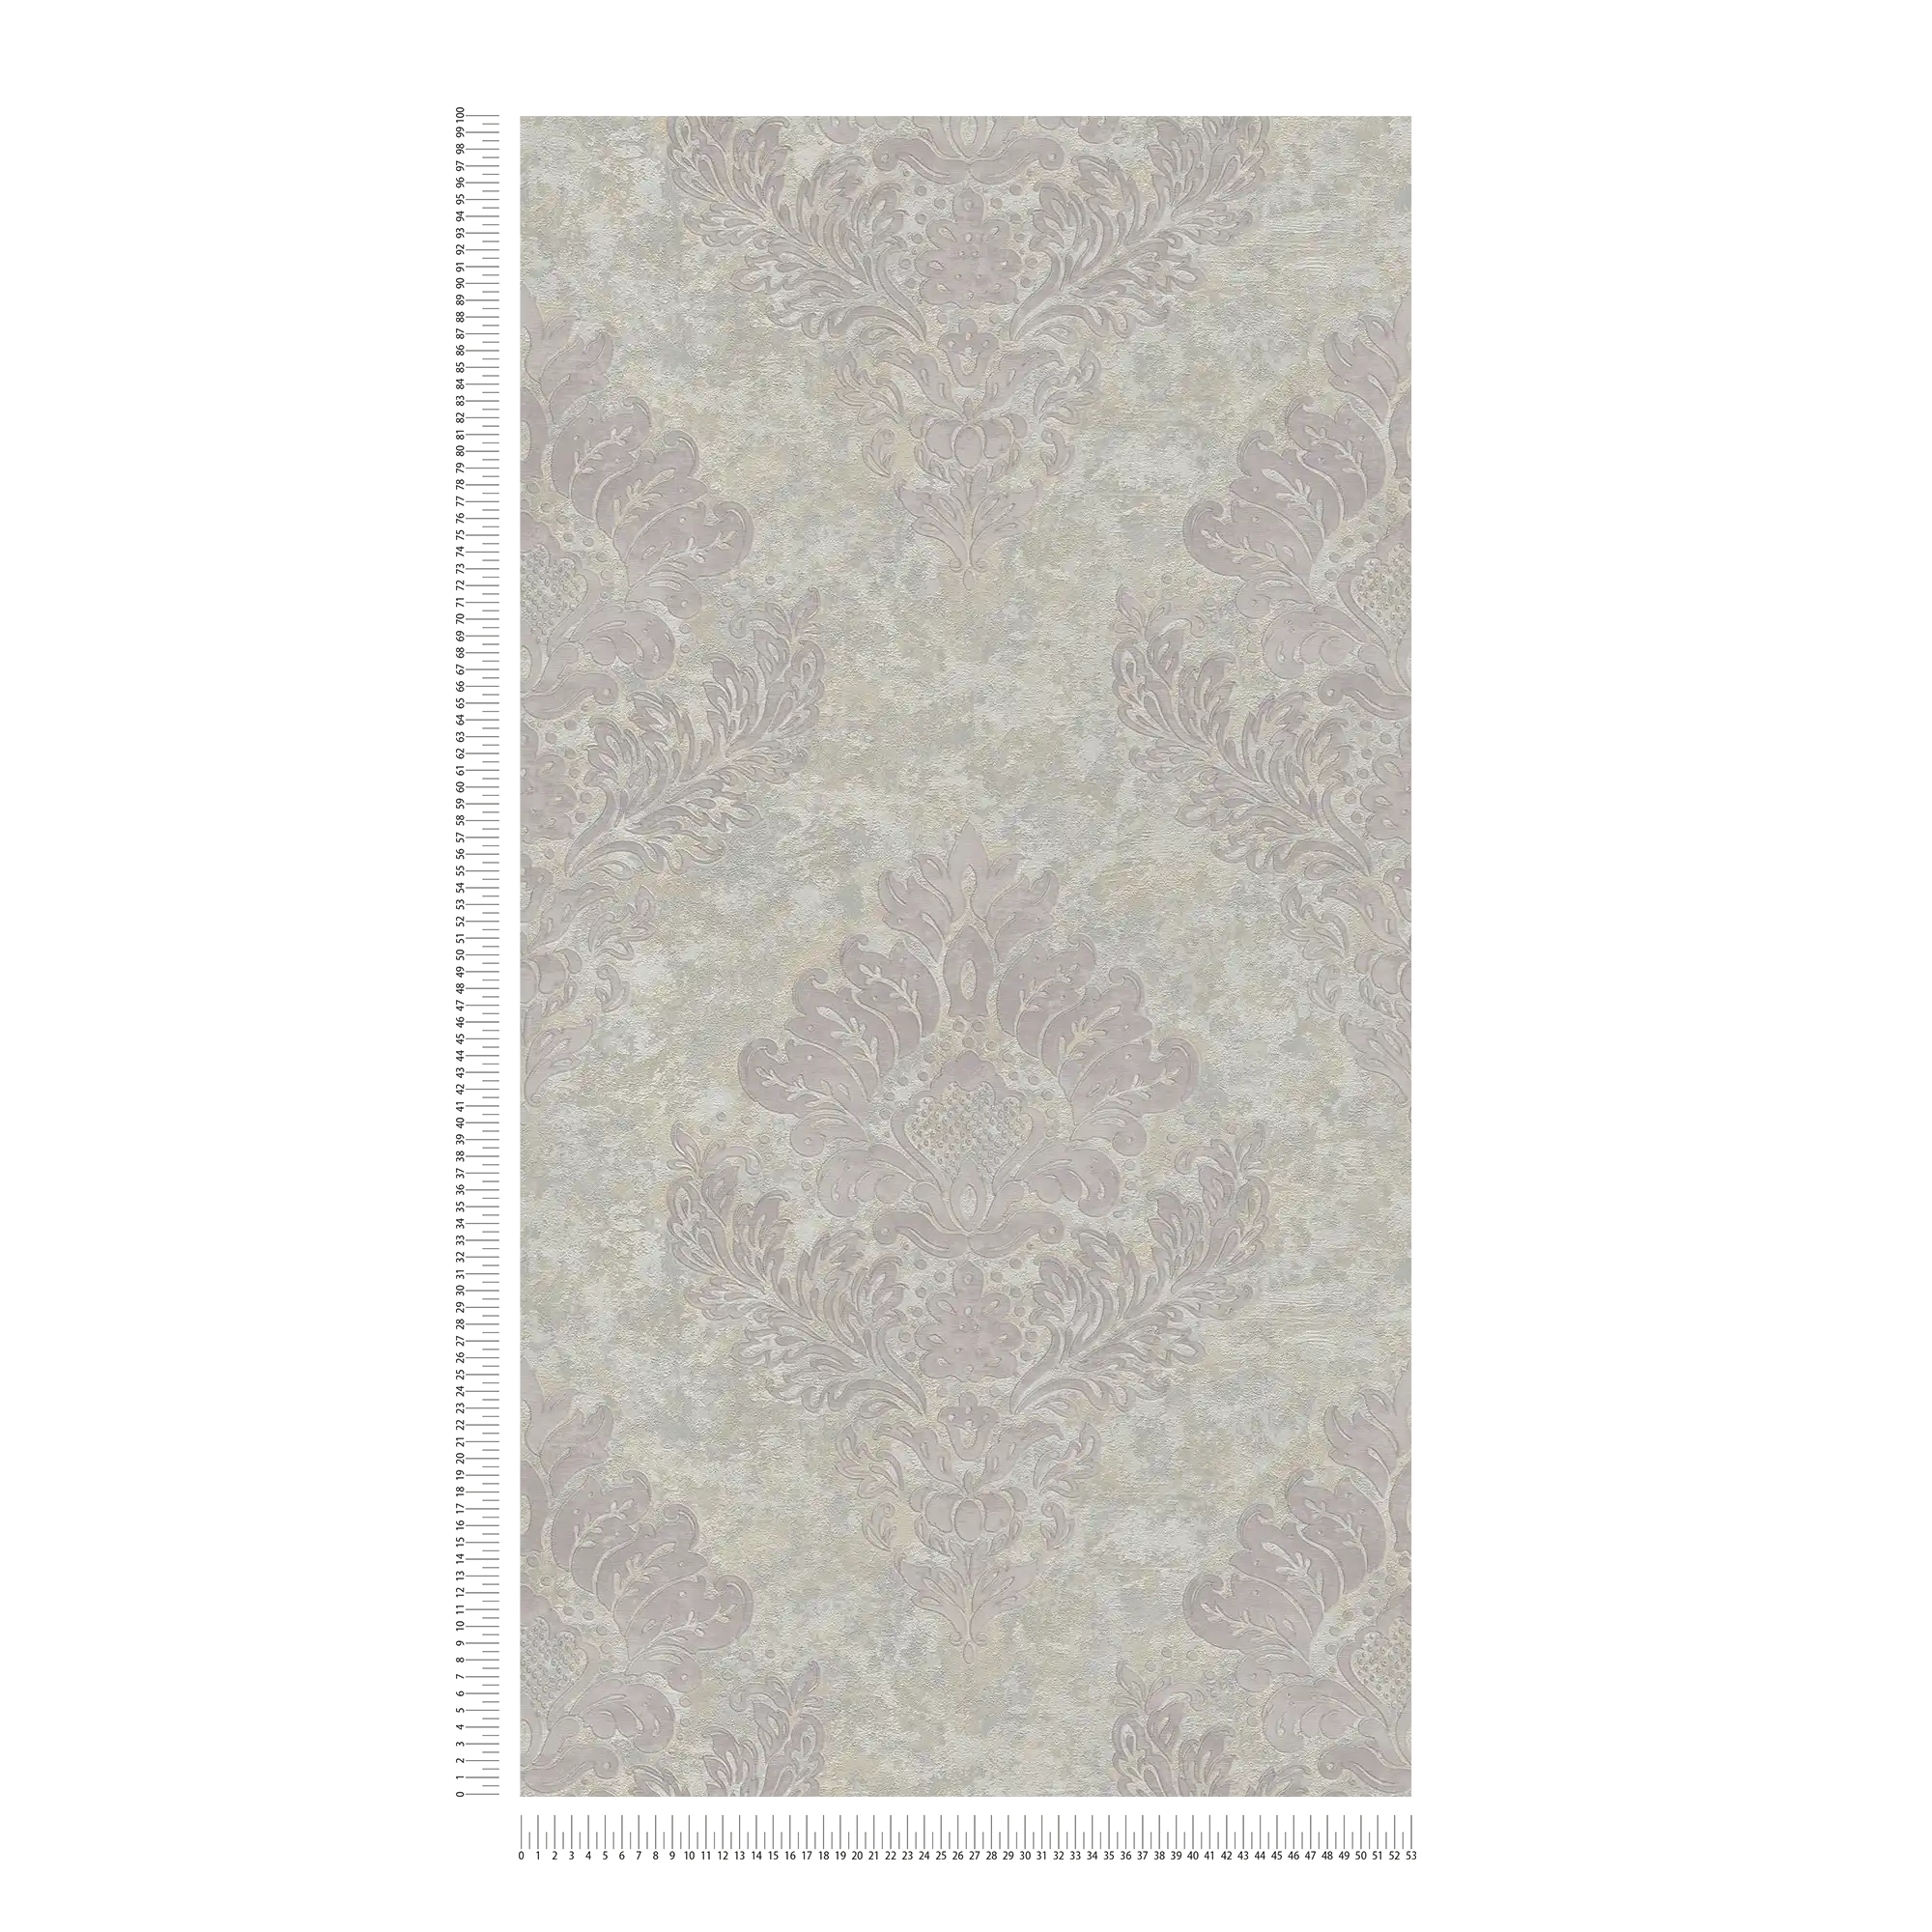             Papier peint avec ornements floraux & effet métallique - beige, gris
        